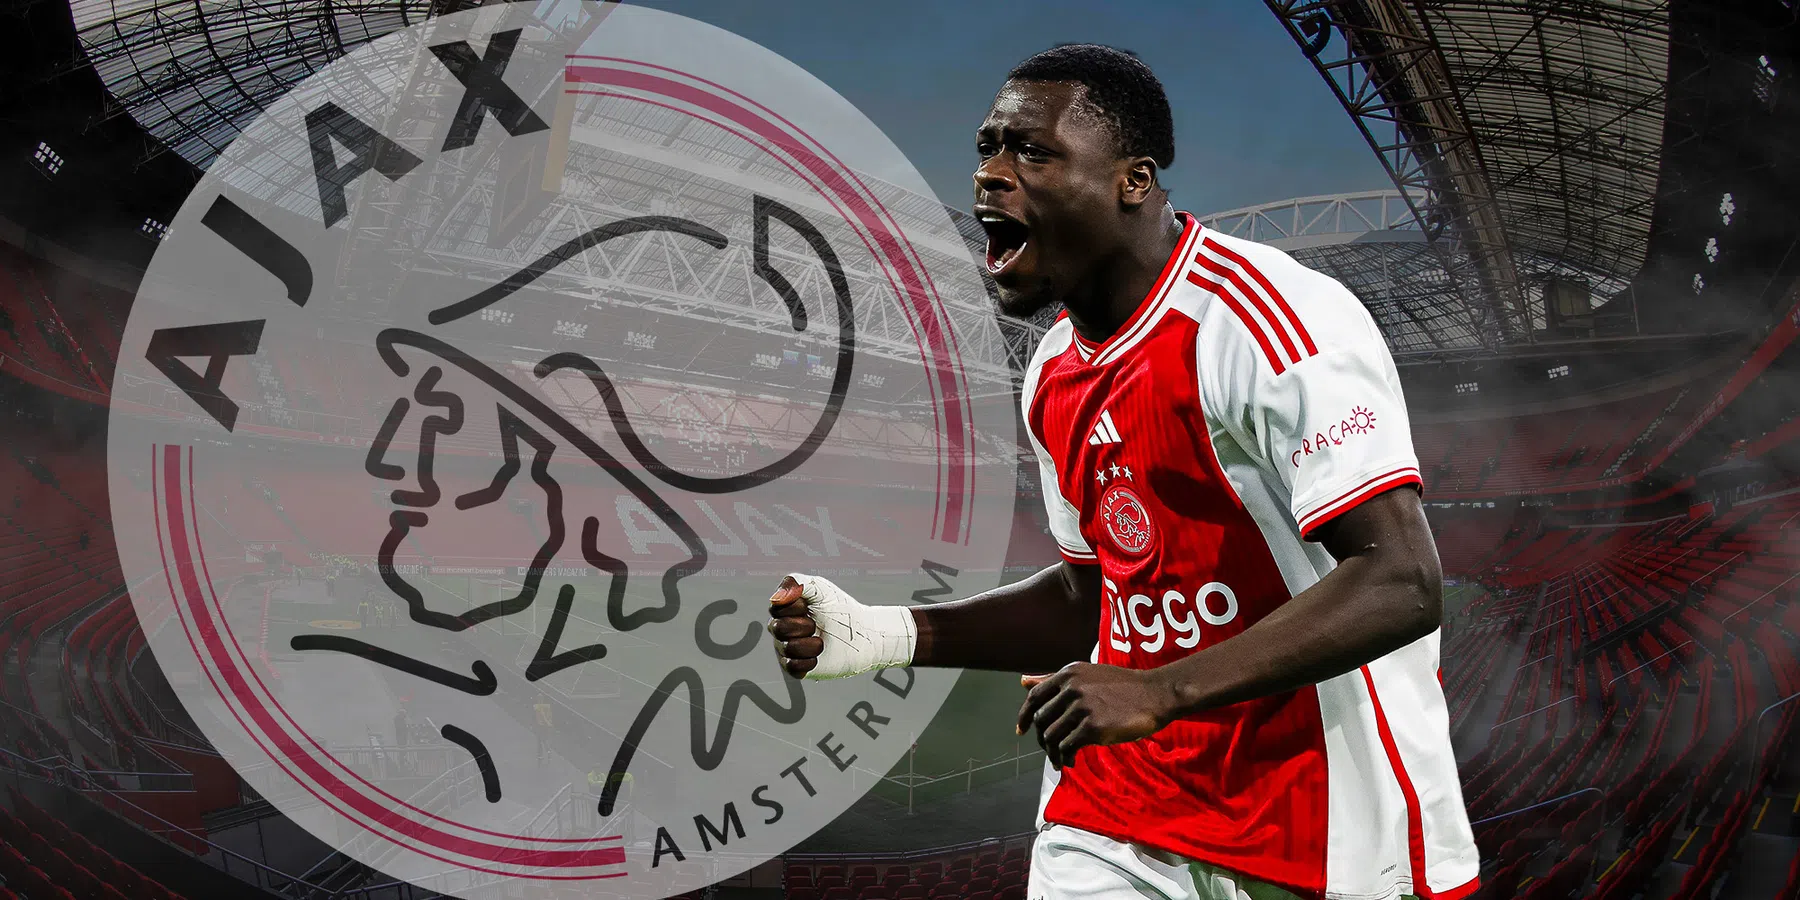 VoetbalPrimeur en FACTS zoeken de meest geschikte club voor Ajax-spits Brobbey